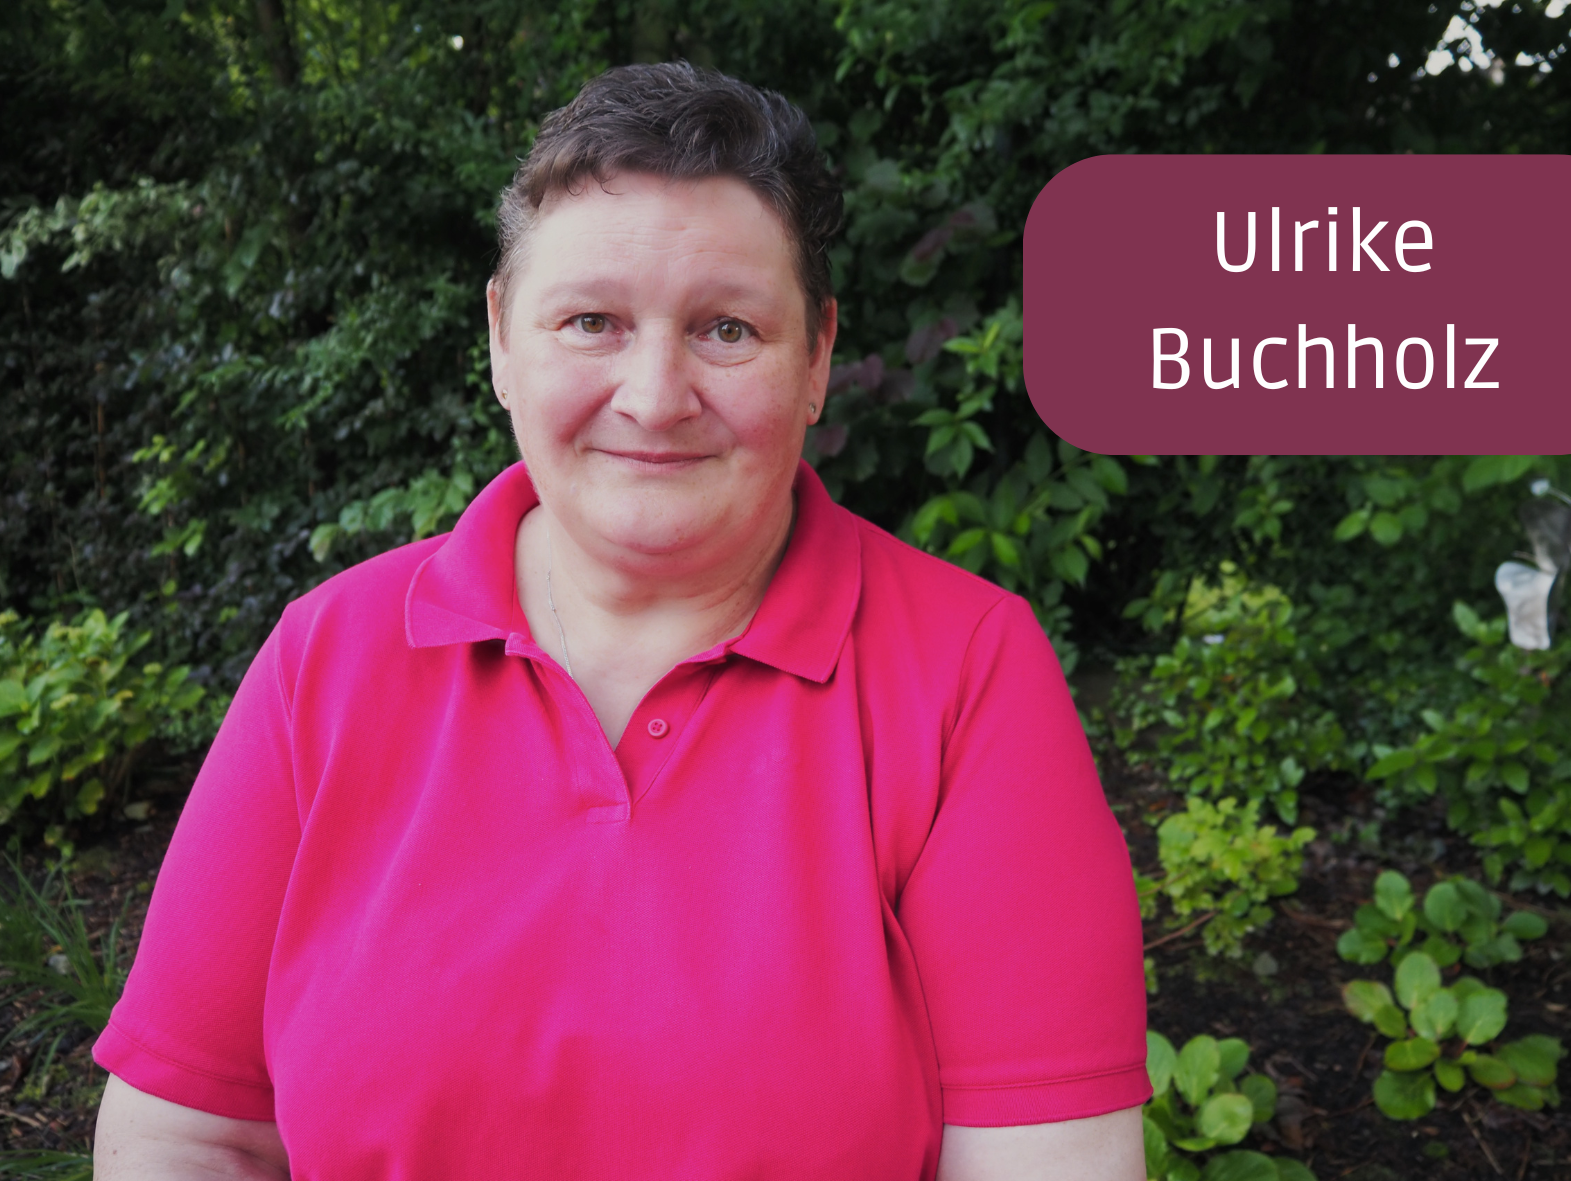 Ulrike Buchholz